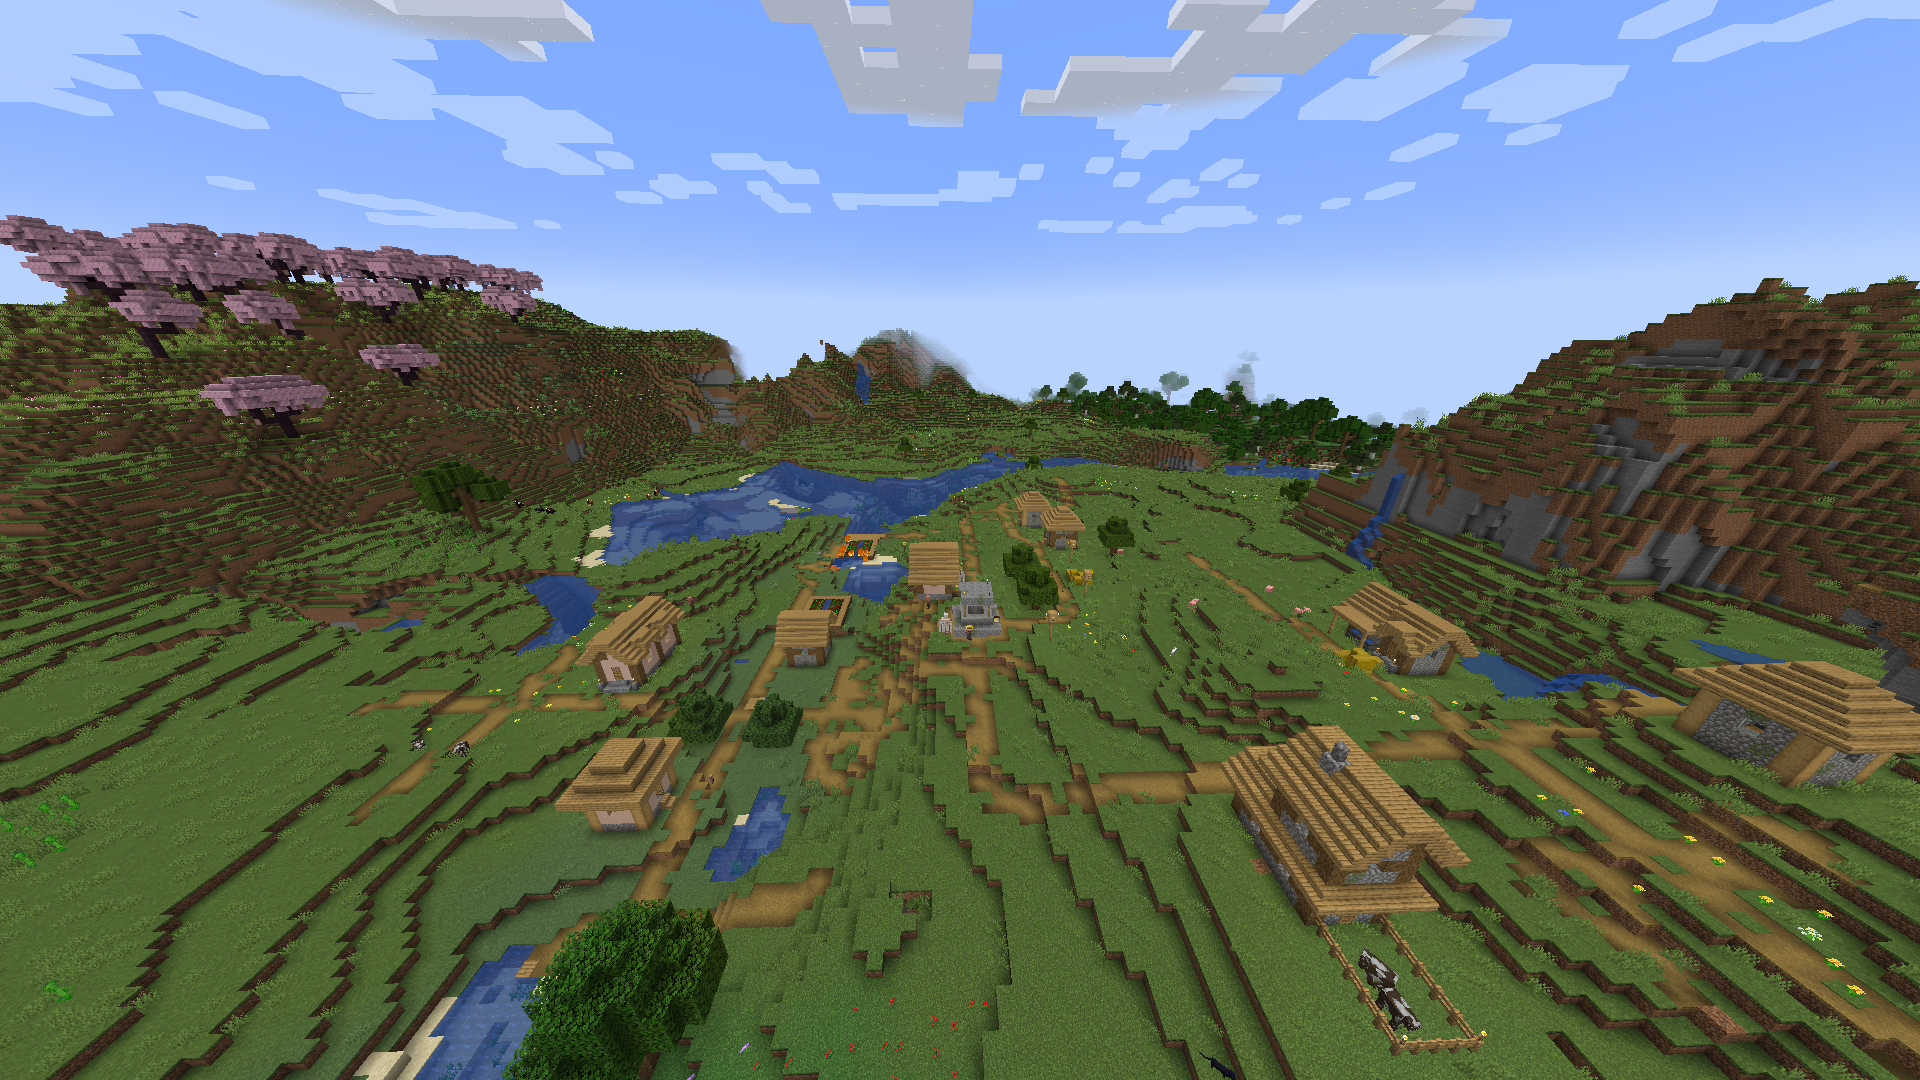 Wioska siedząca otoczona wzgórzami w Minecraft